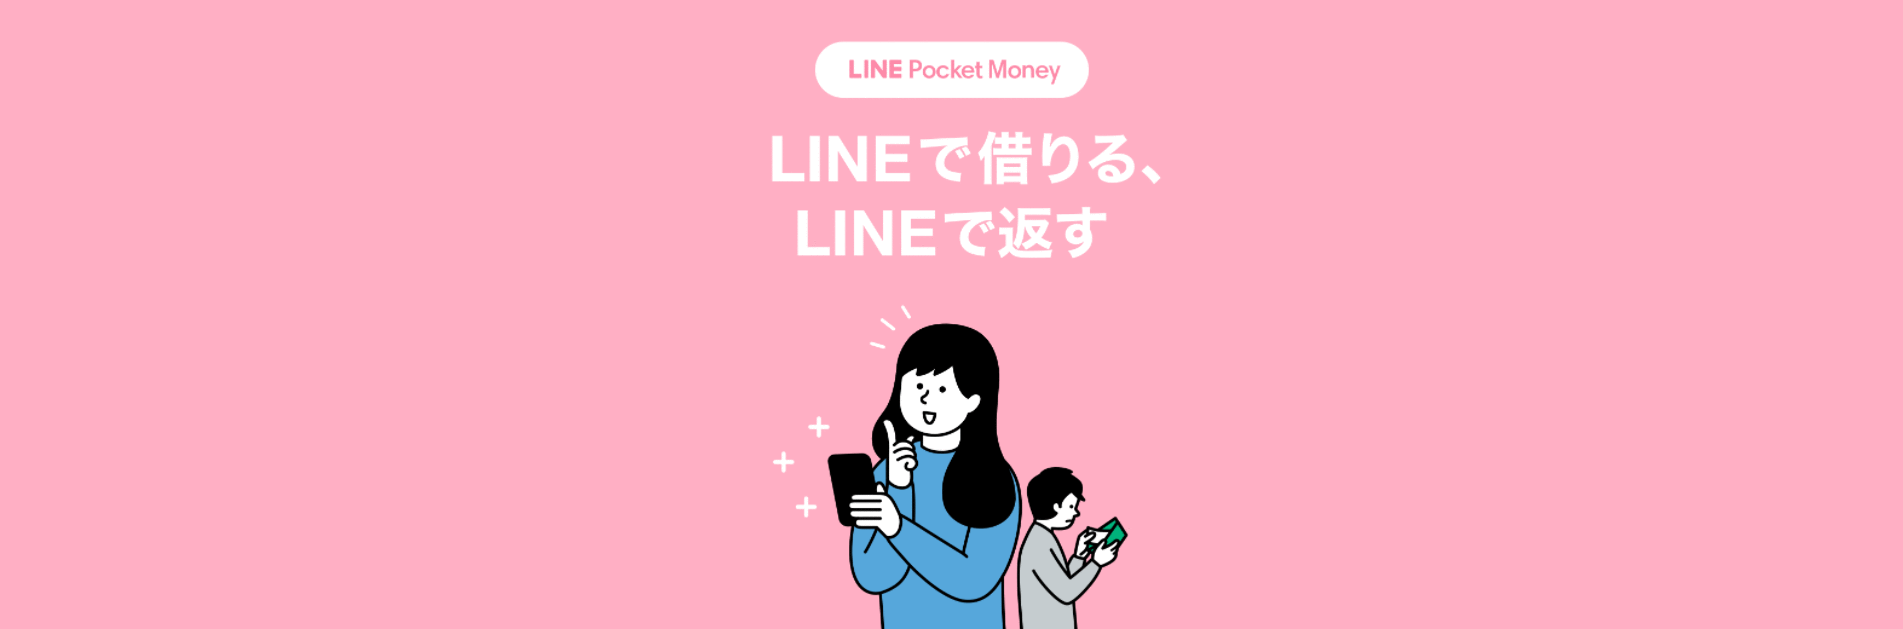 LINE(ライン)ポケットマネーのアイキャッチ